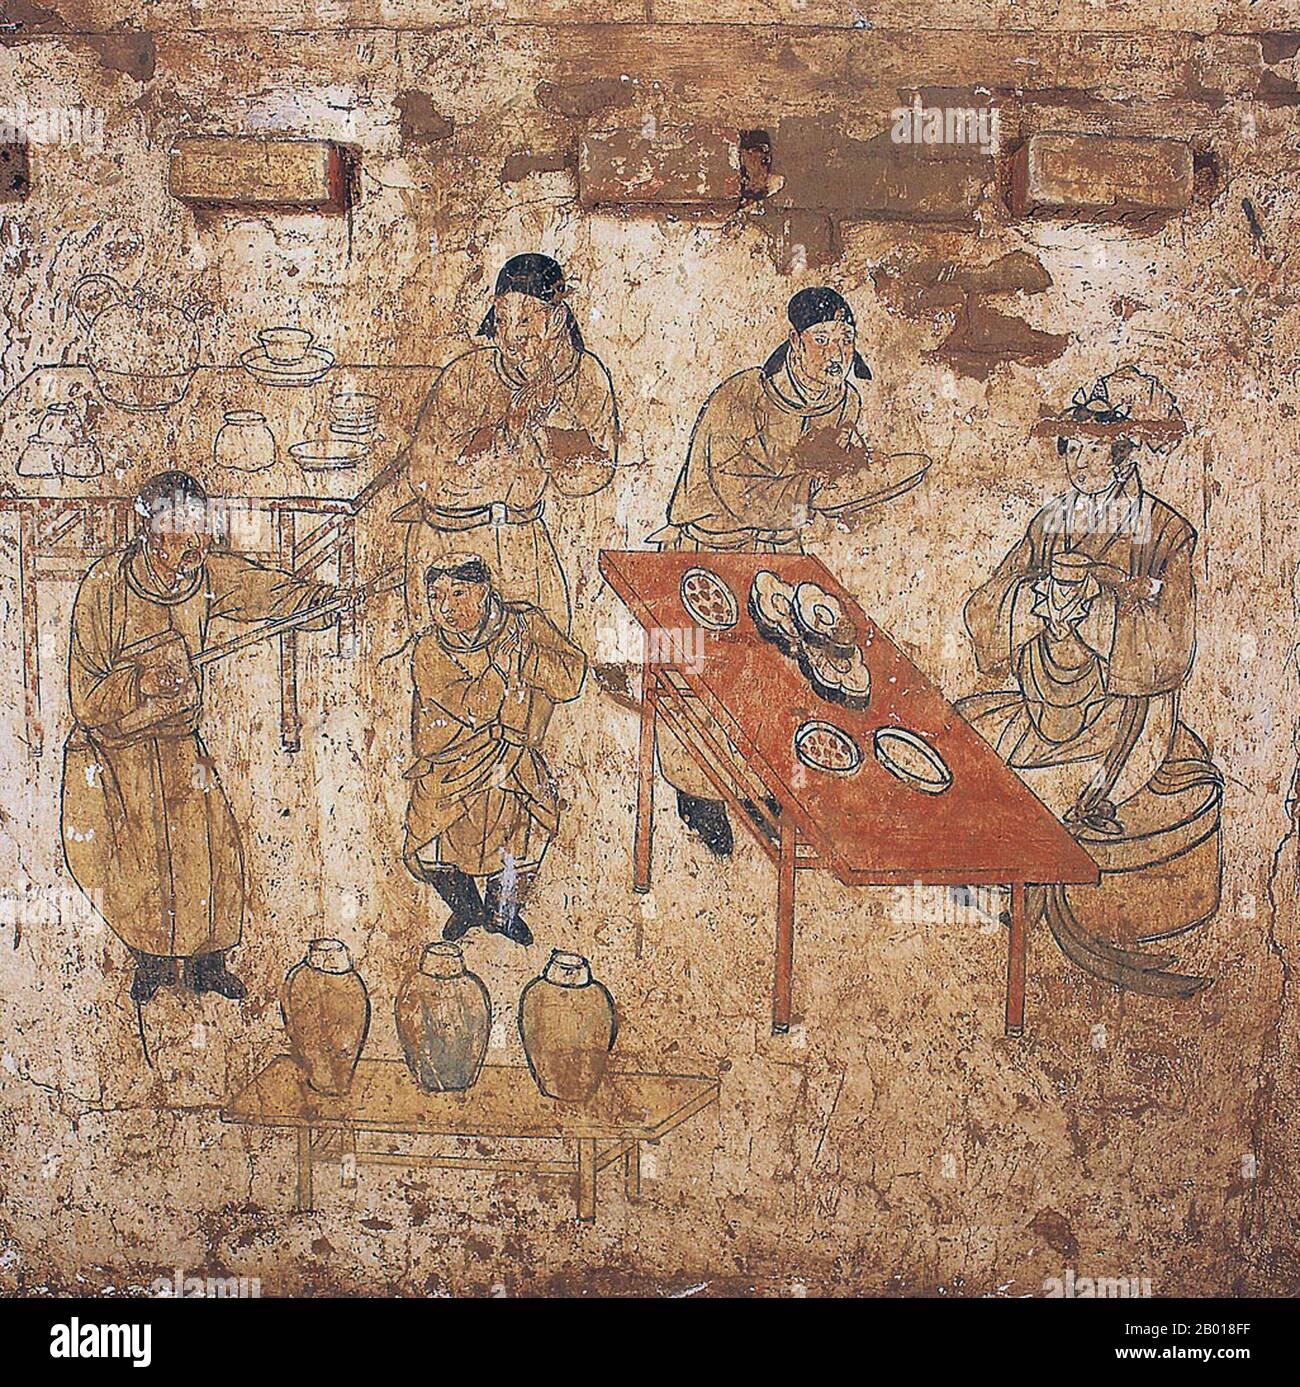 Chine: Musiciens et une dame se régalent dans une murale dans la tombe de Han Shixun, Xuanhua, Hebei, dynastie Liao (1093-1117). La dynastie des Liao, aussi connue sous le nom d'Empire Khitan, était un État qui régnait sur les régions de Manchurie, de Mongolie et certaines parties du nord de la Chine. Elle a été fondée par le clan Yelü du peuple Khitan la même année que la dynastie Tang s'est effondrée (907), même si son premier dirigeant, Yelü Abaoji (Yarud Ambagai Khan), n'a déclaré un nom d'époque que 916. Le nom 'Liao' (officiellement 'Great Liao') n'a été officiellement adopté qu'en 947, sous l'empereur Yelü Ruan. Banque D'Images